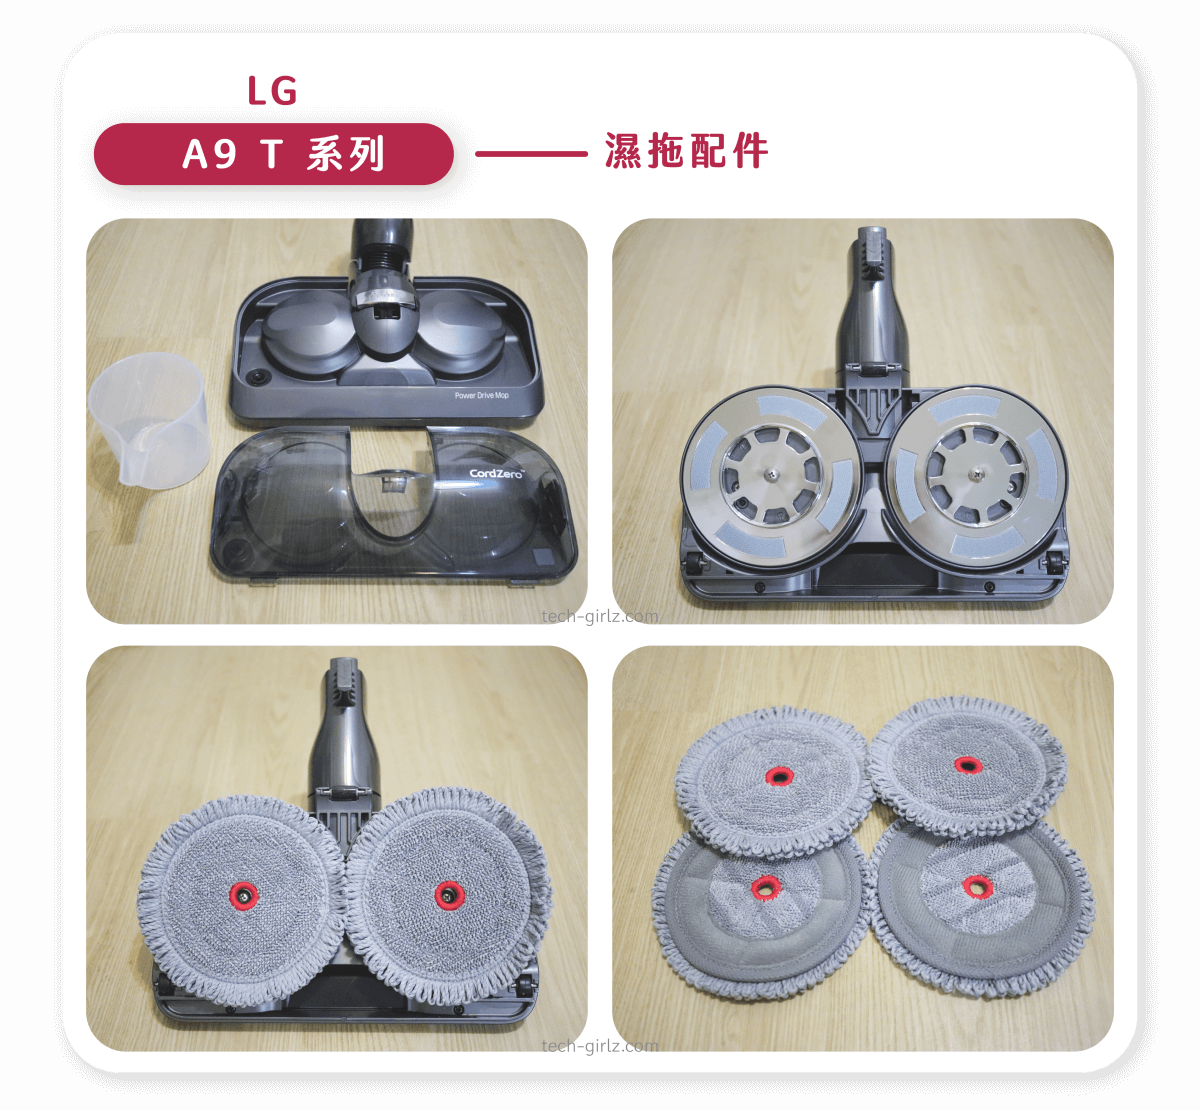 LG A9T 系列 濕拖配件